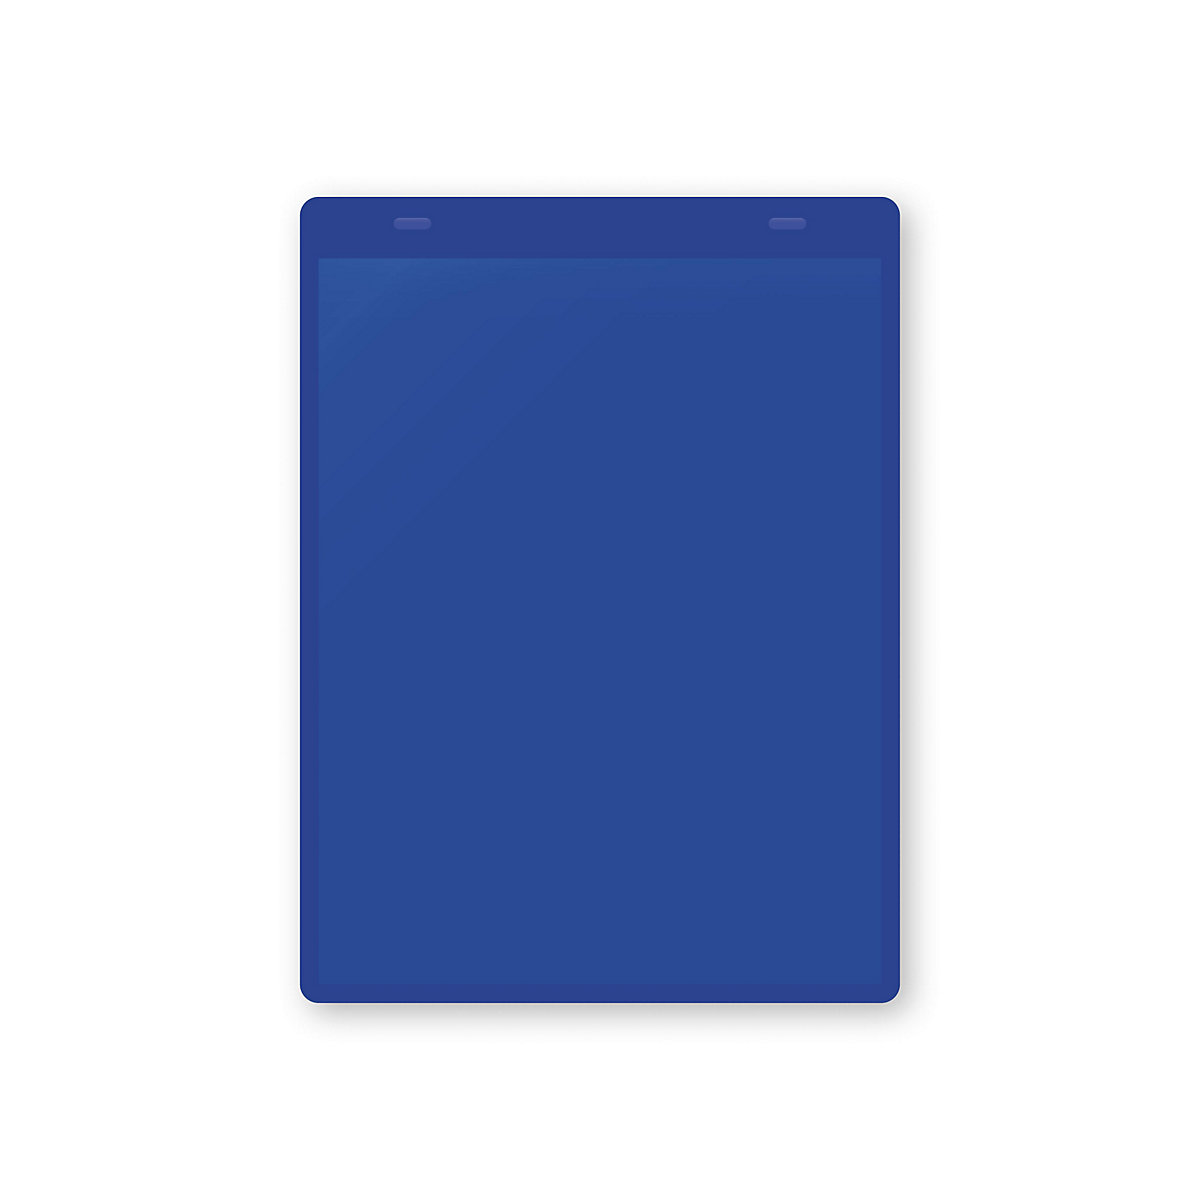 Öntapadó dokumentumtartó tasakok, DIN A5, álló, cs. e. 10 db, kék